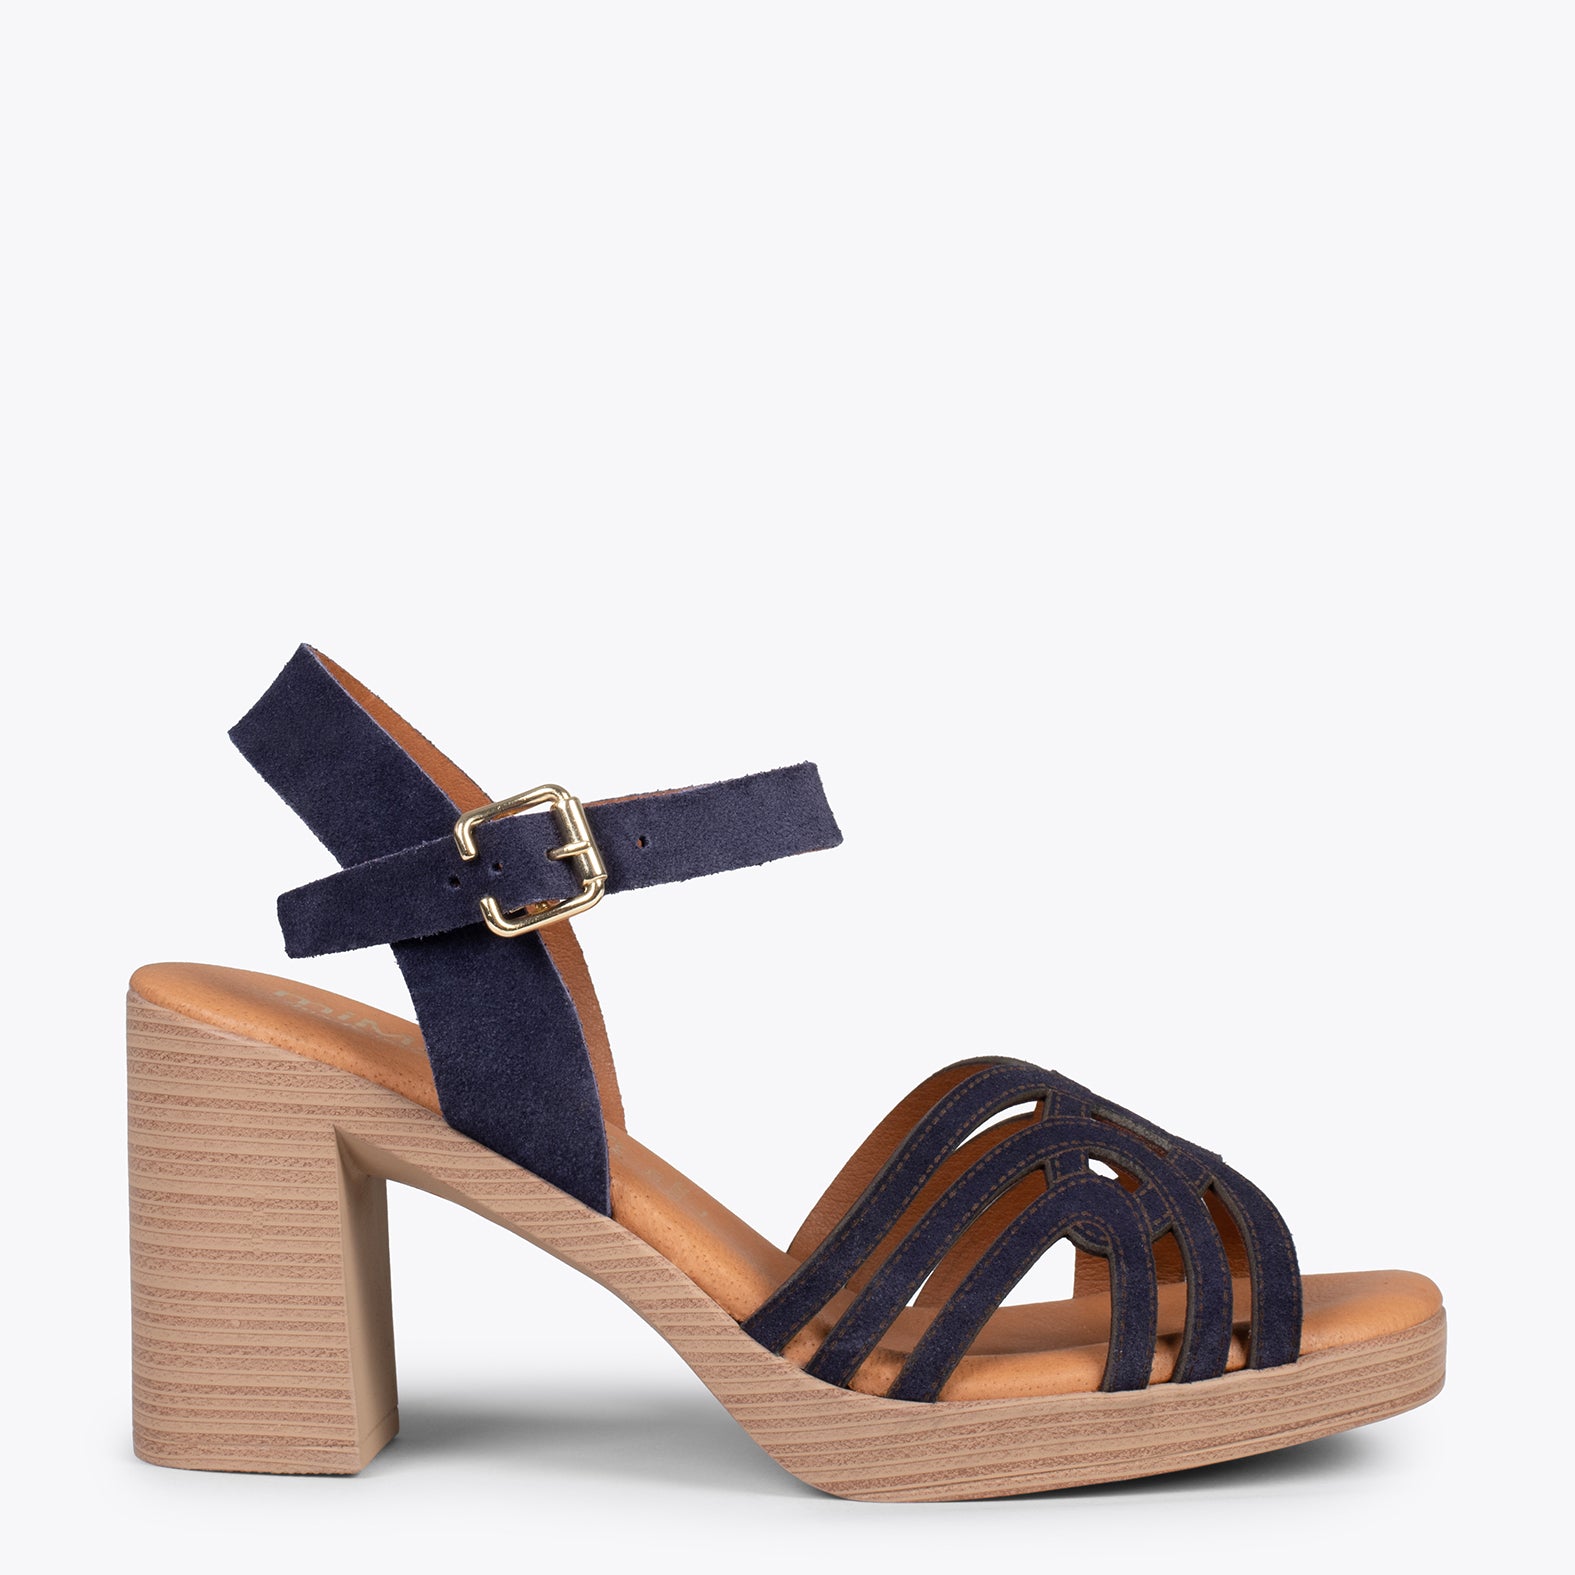 CIBELES – NAVY wooden block heel sandal